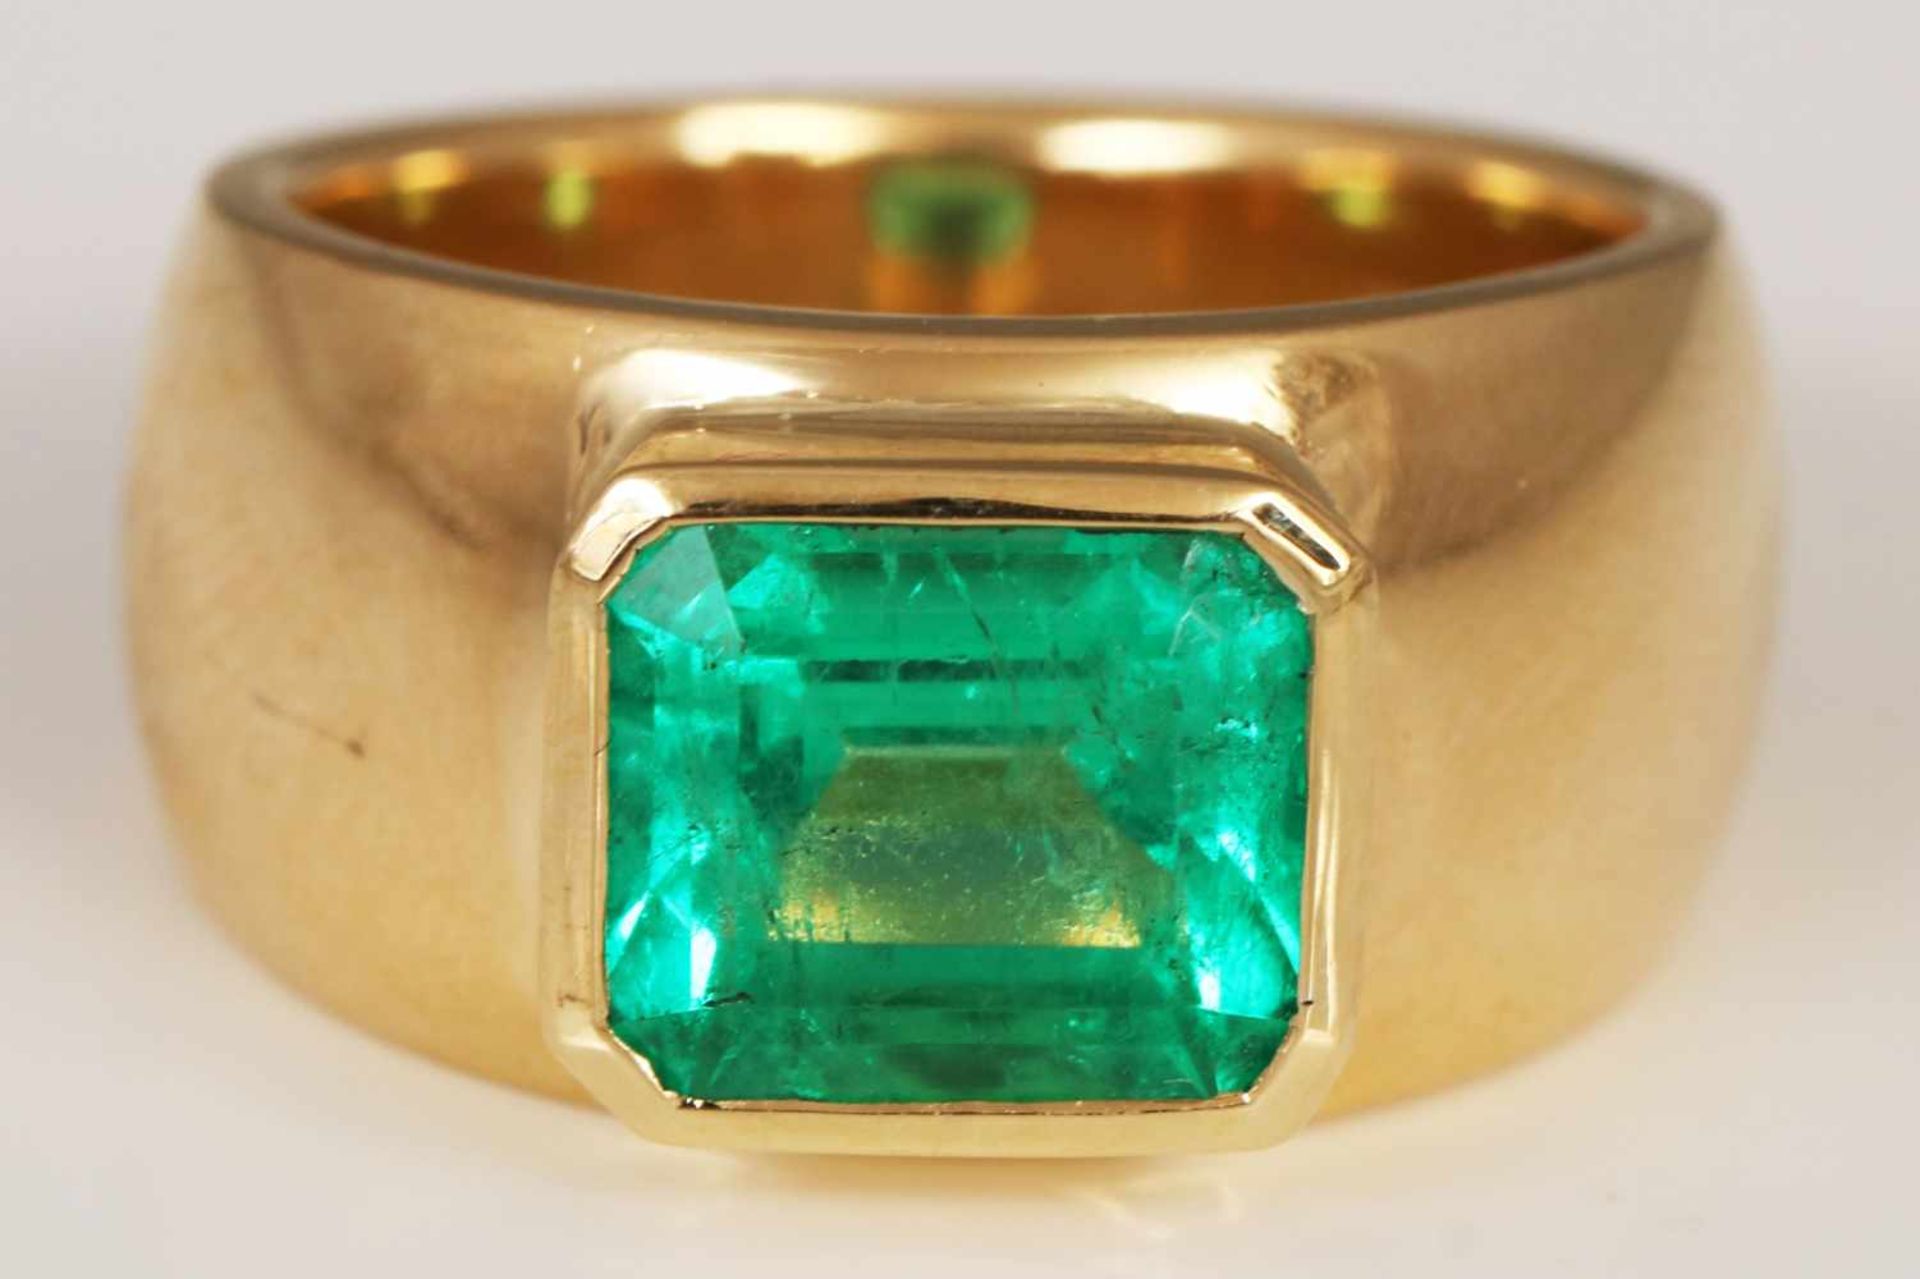 Massiver Goldring mit Smaragd750er Gelbgold, breite, massive Schiene, erhöhter Ringkopf mit